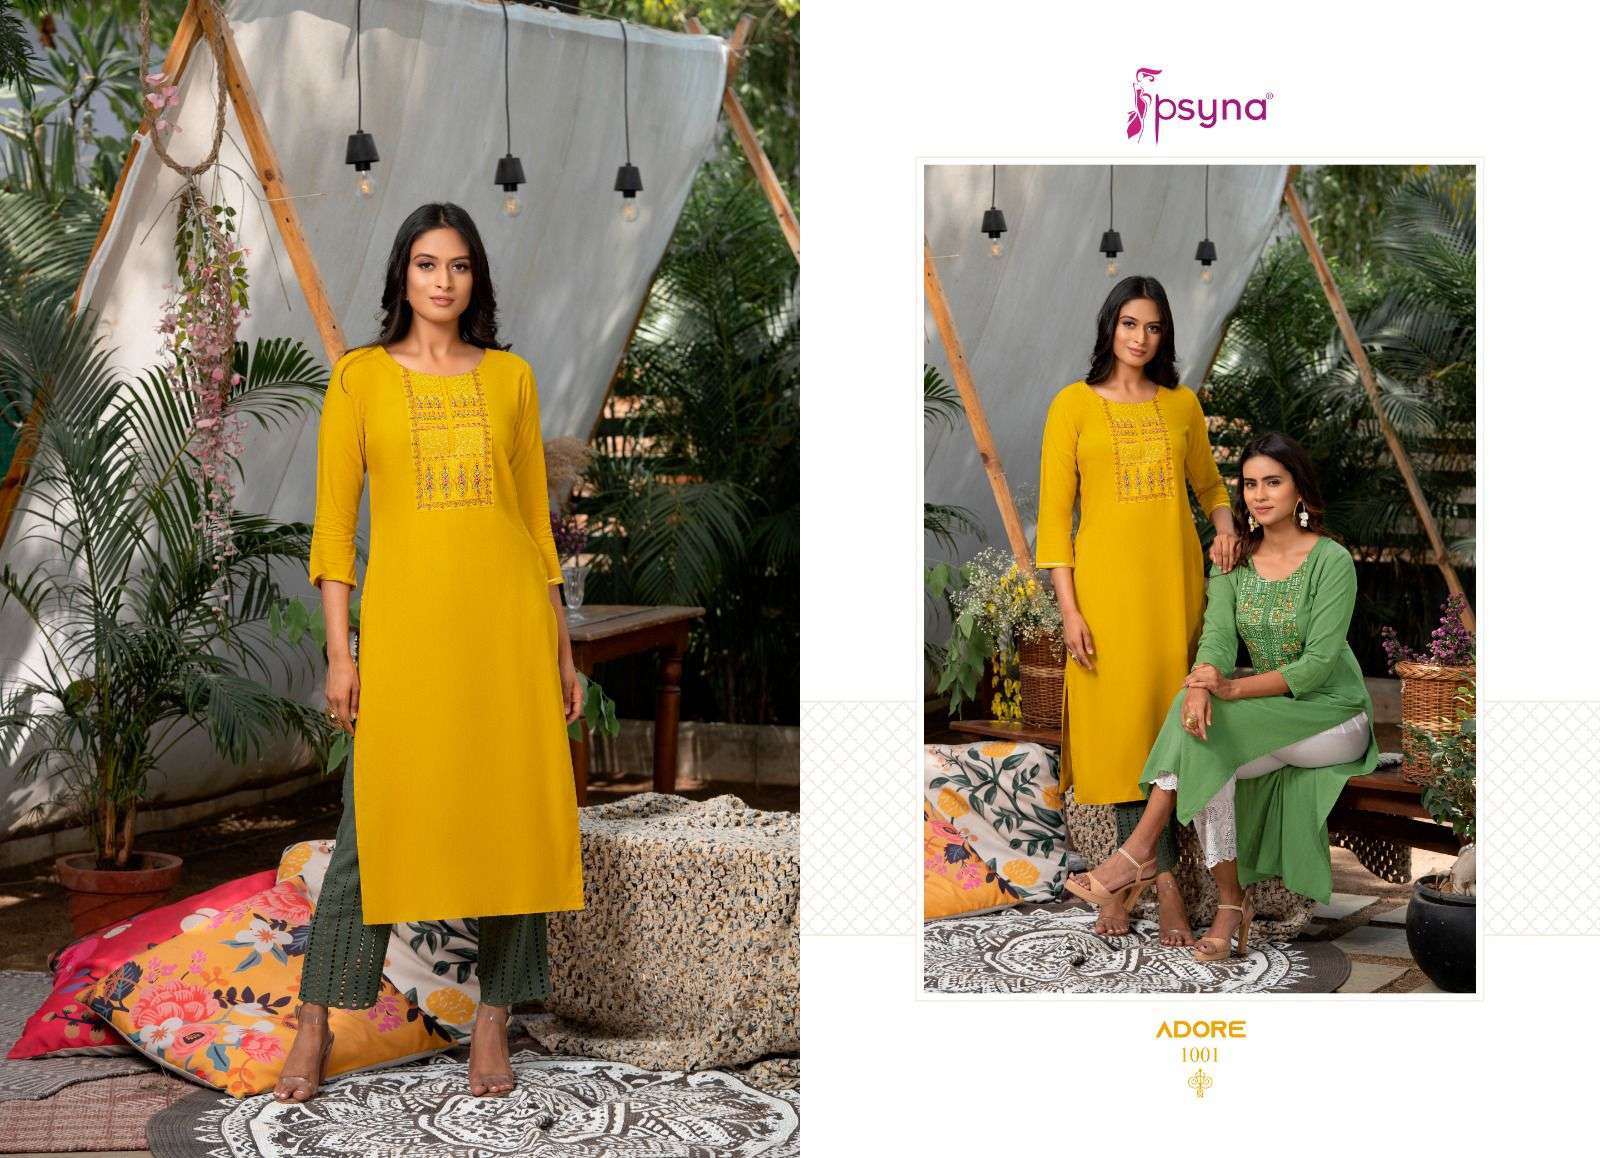 psyna adore 1001-1006 series rayon designer kurtis catalogue manufacturer surat 